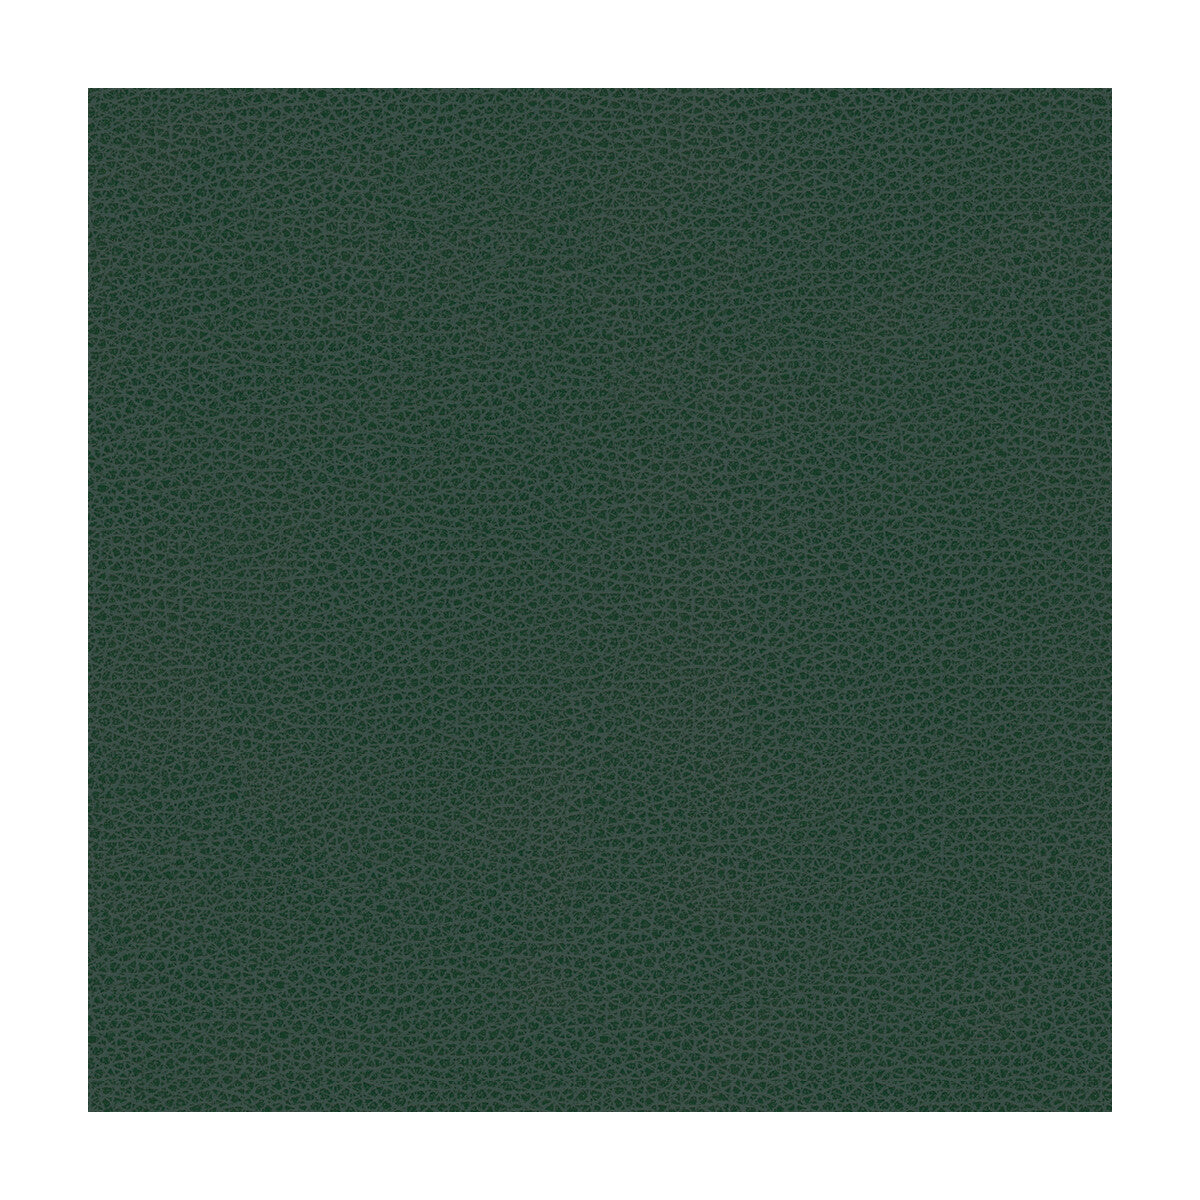 Kravet Design fabric in rigel-5 color - pattern RIGEL.5.0 - by Kravet Design